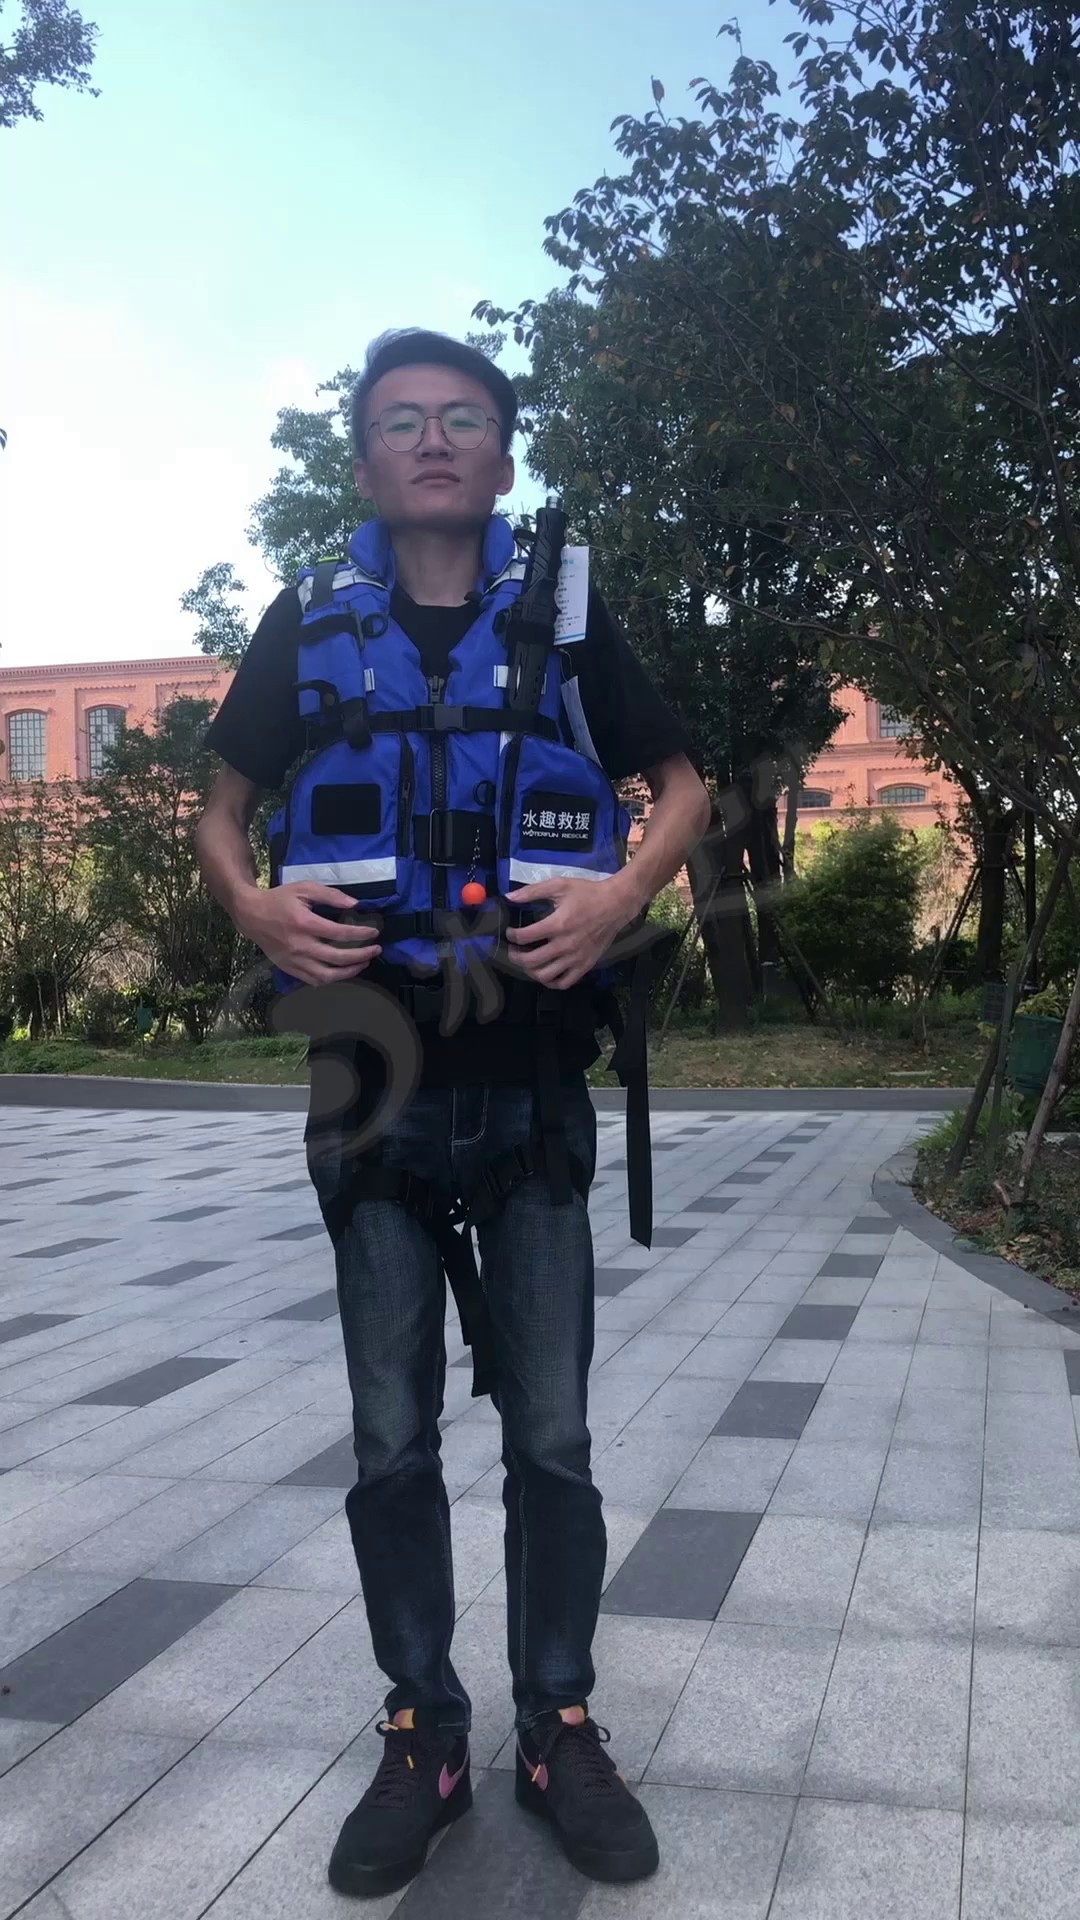 北京附近水域救生衣多少钱,水域救生衣